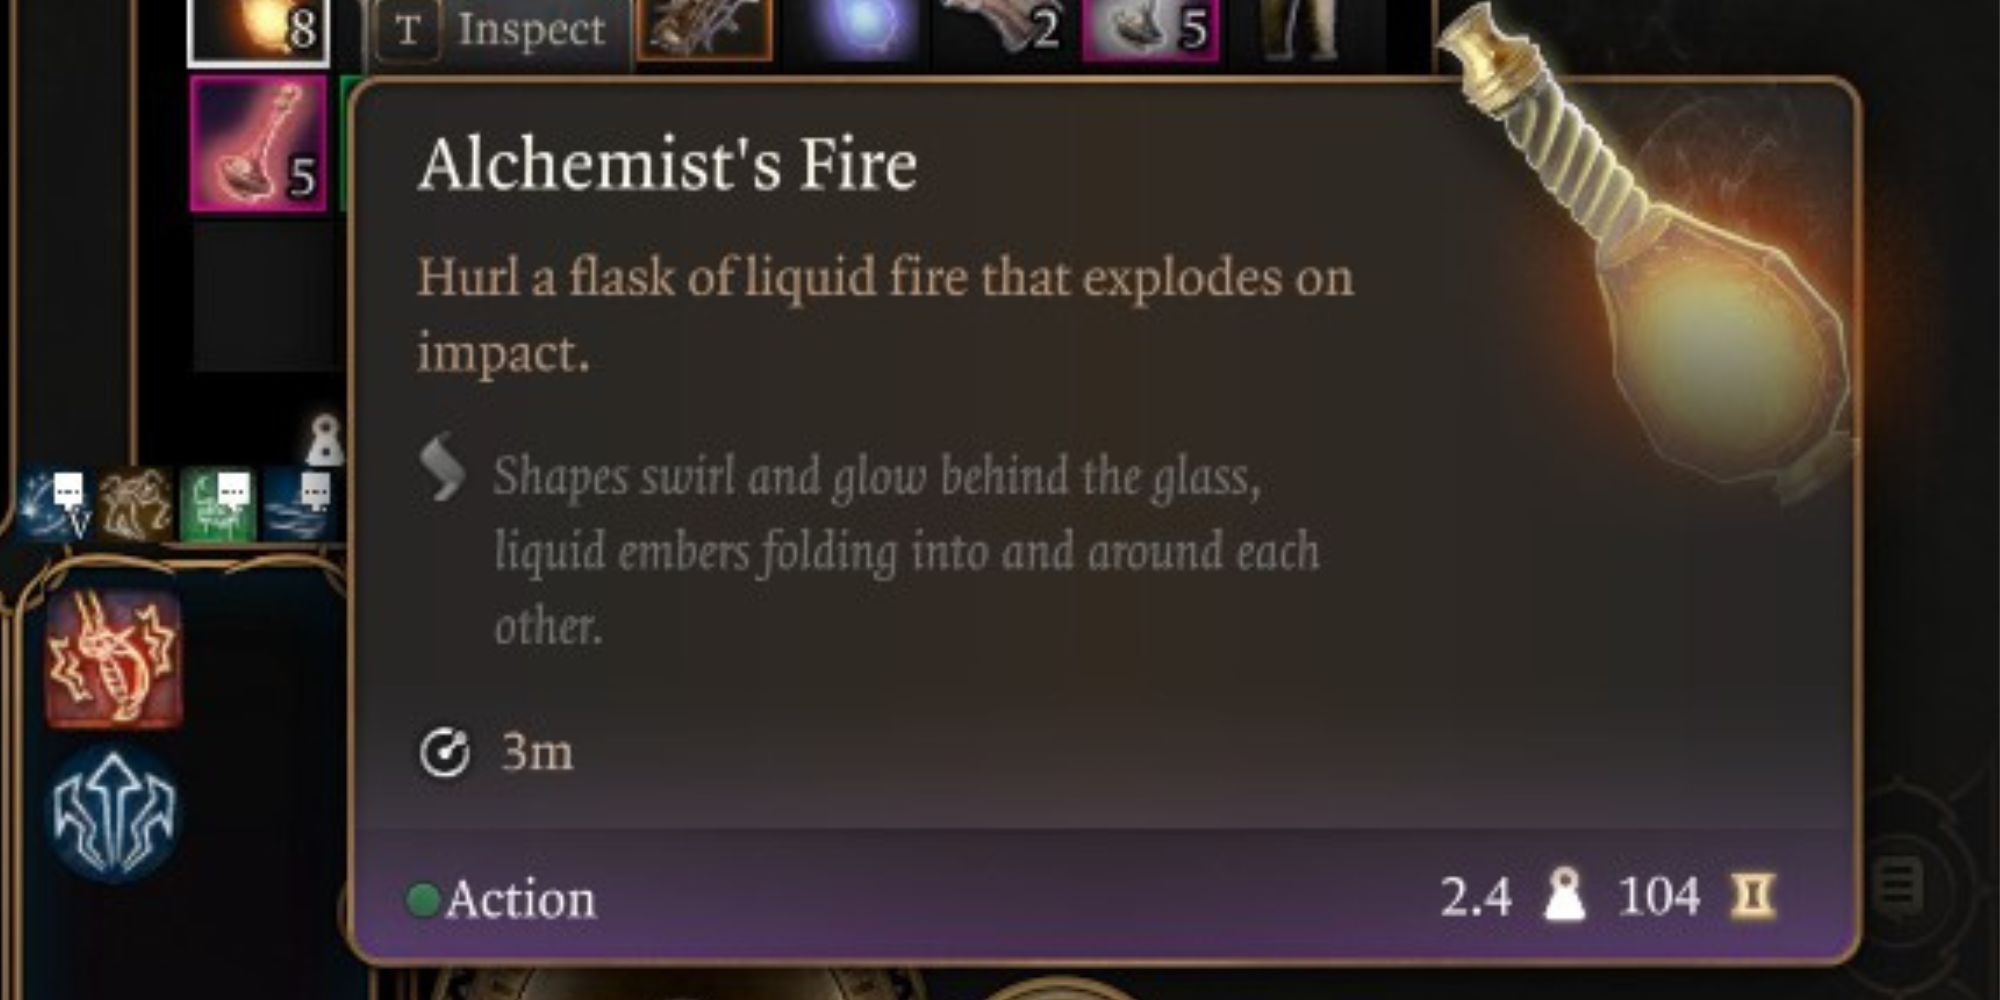 Alchemist's Fire in Baldur's Gate 3